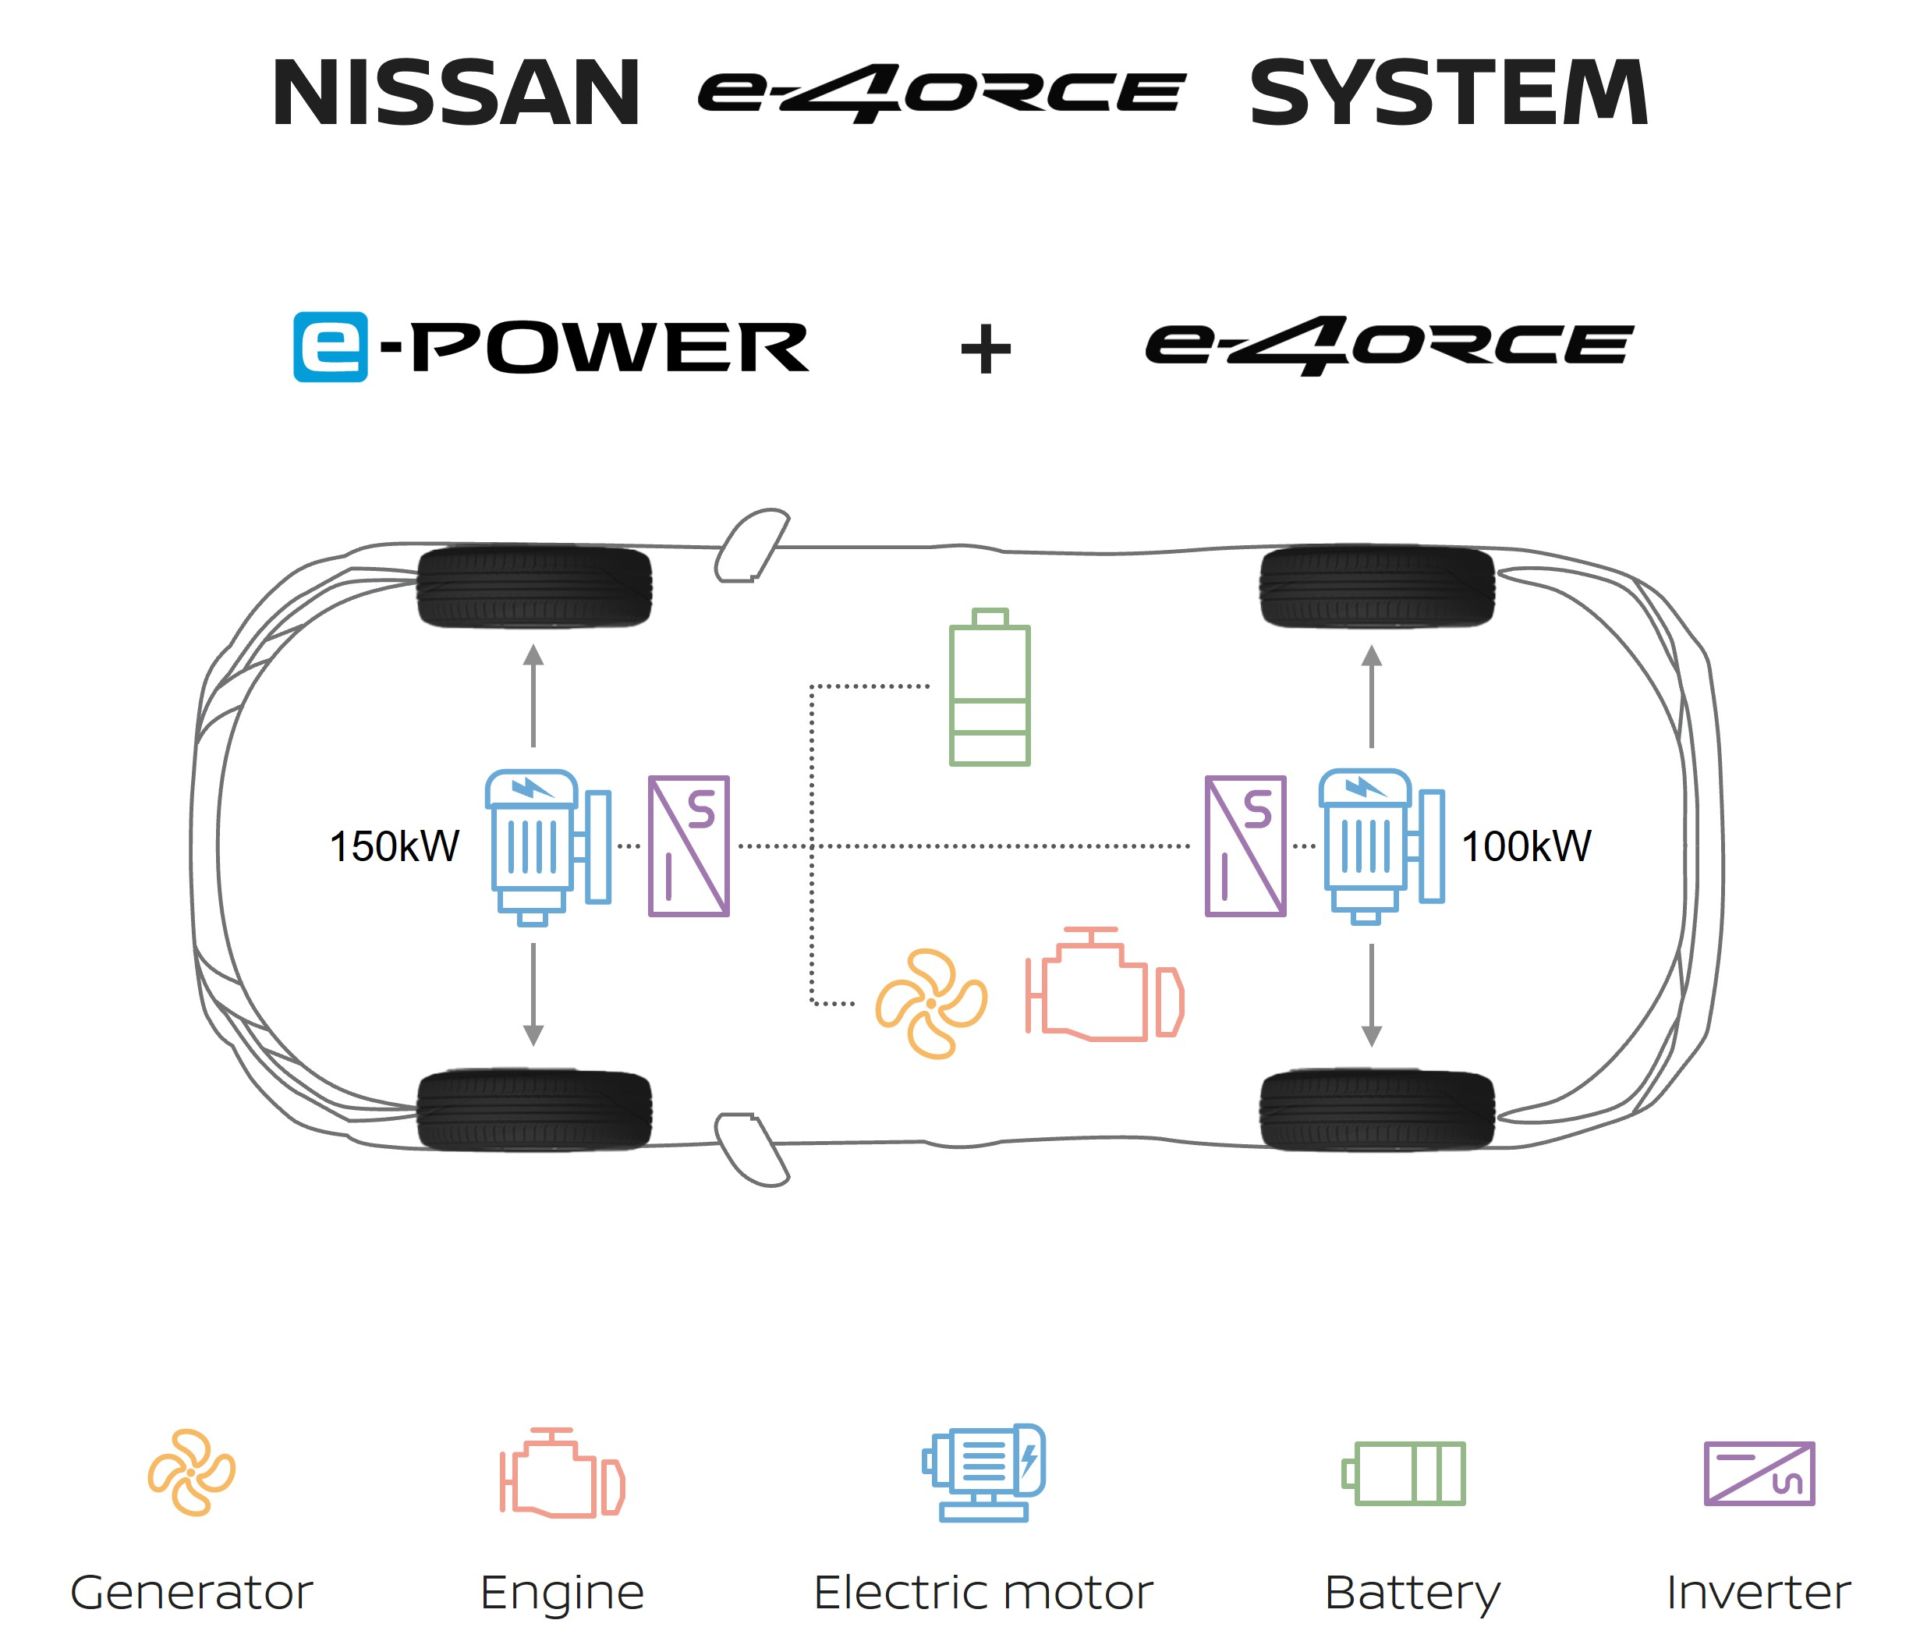 Elektrickký pohon 4x4 Nissann e-4orce